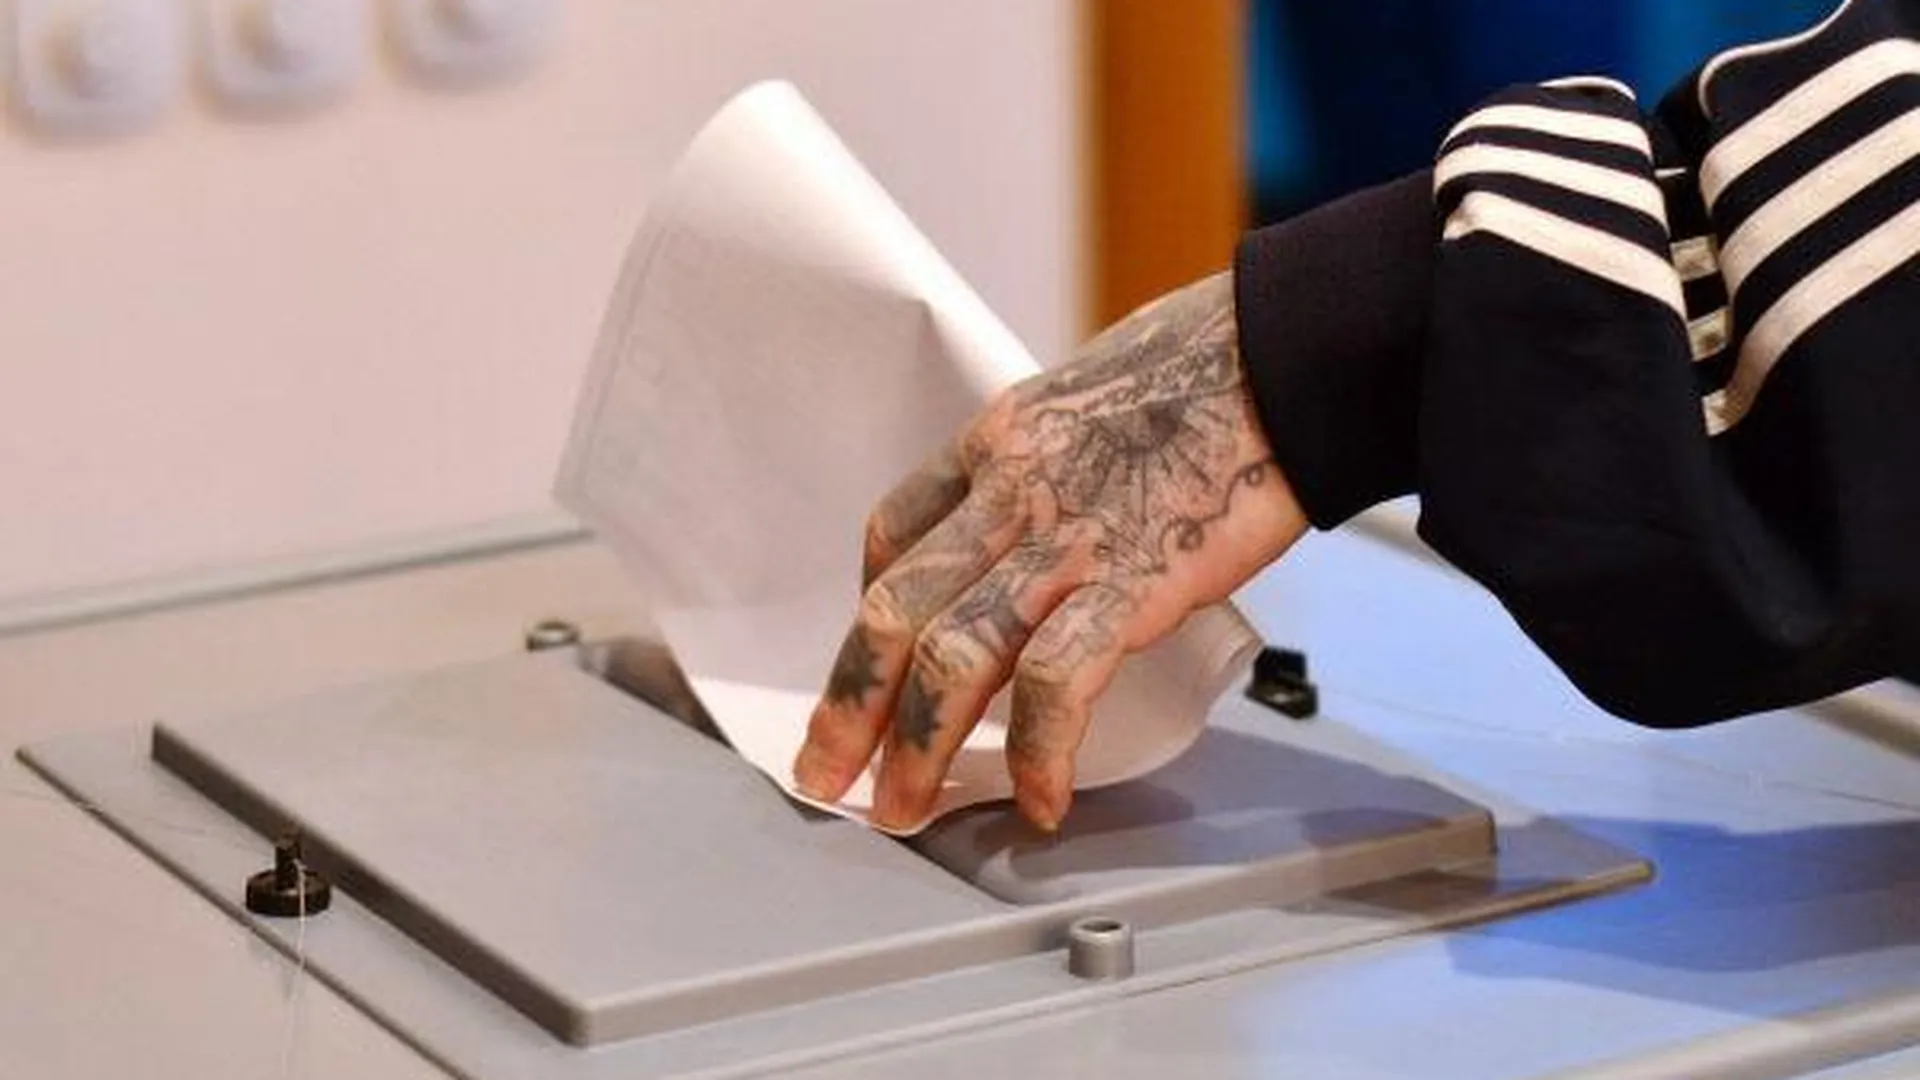 Попытка повторного голосования за деньги пресечена в Люберецком районе 